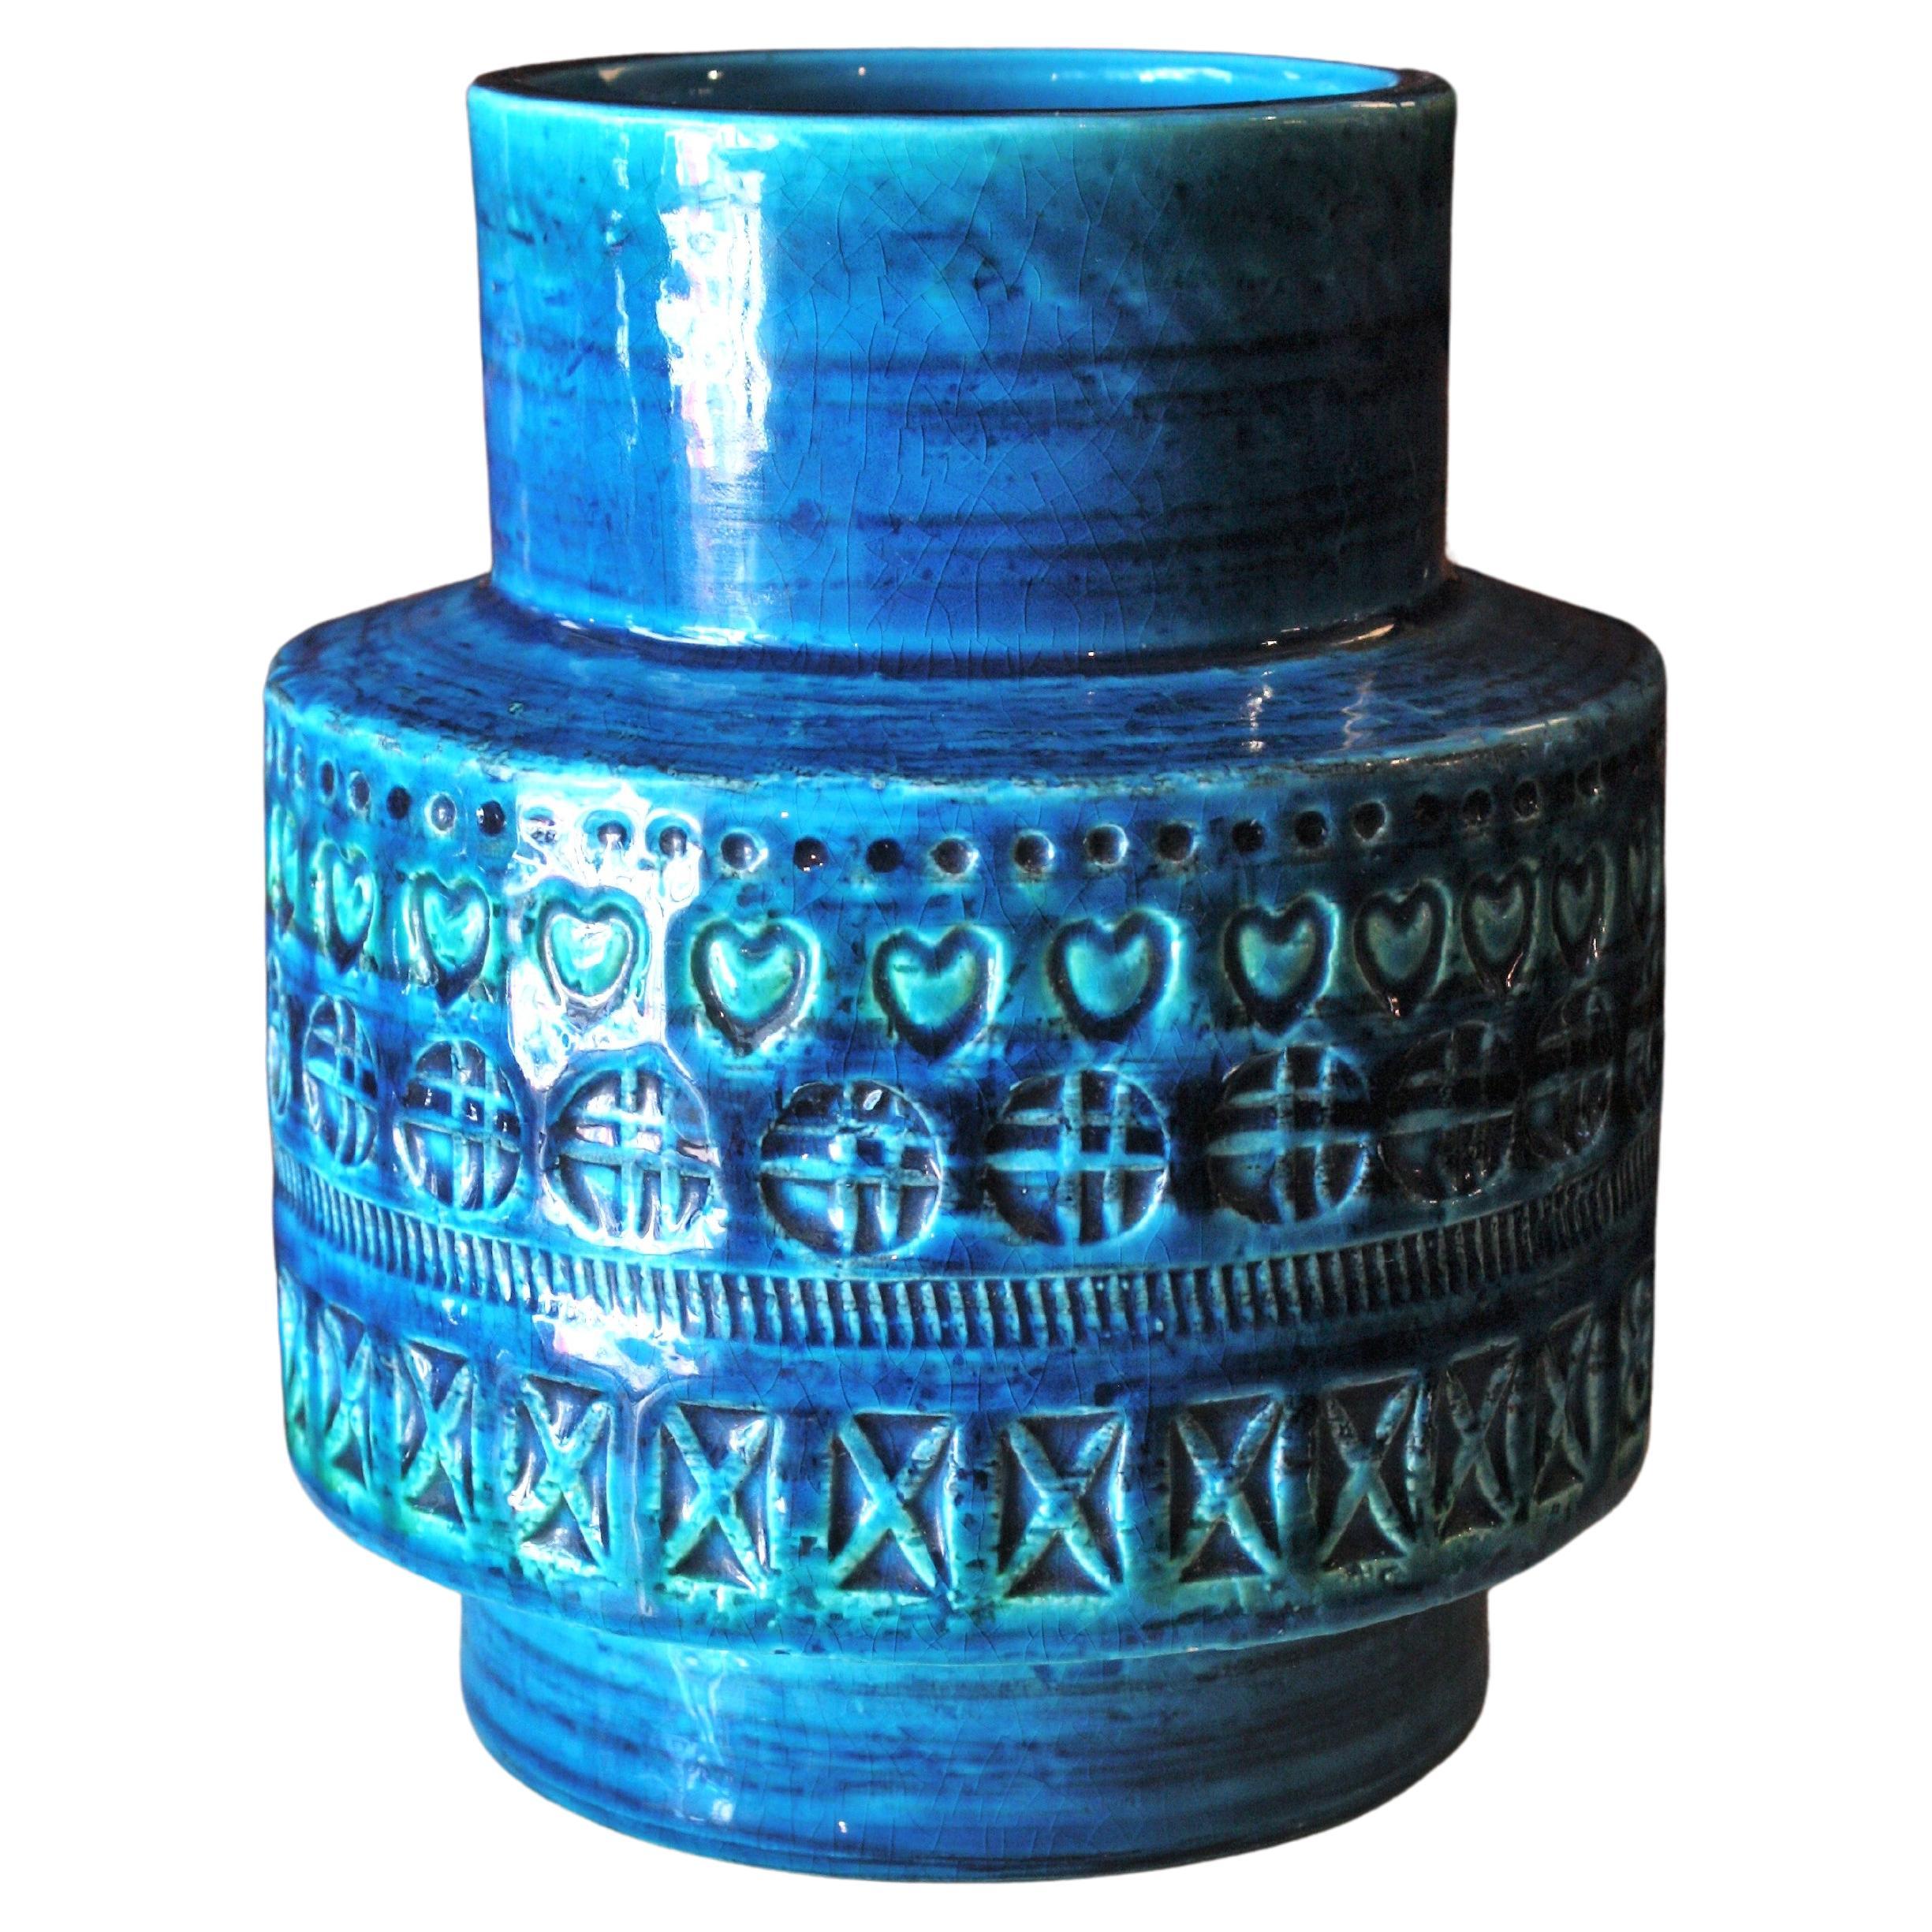 Bitossi Aldo Londi Rimini Blue Ceramic Vase, 1960s